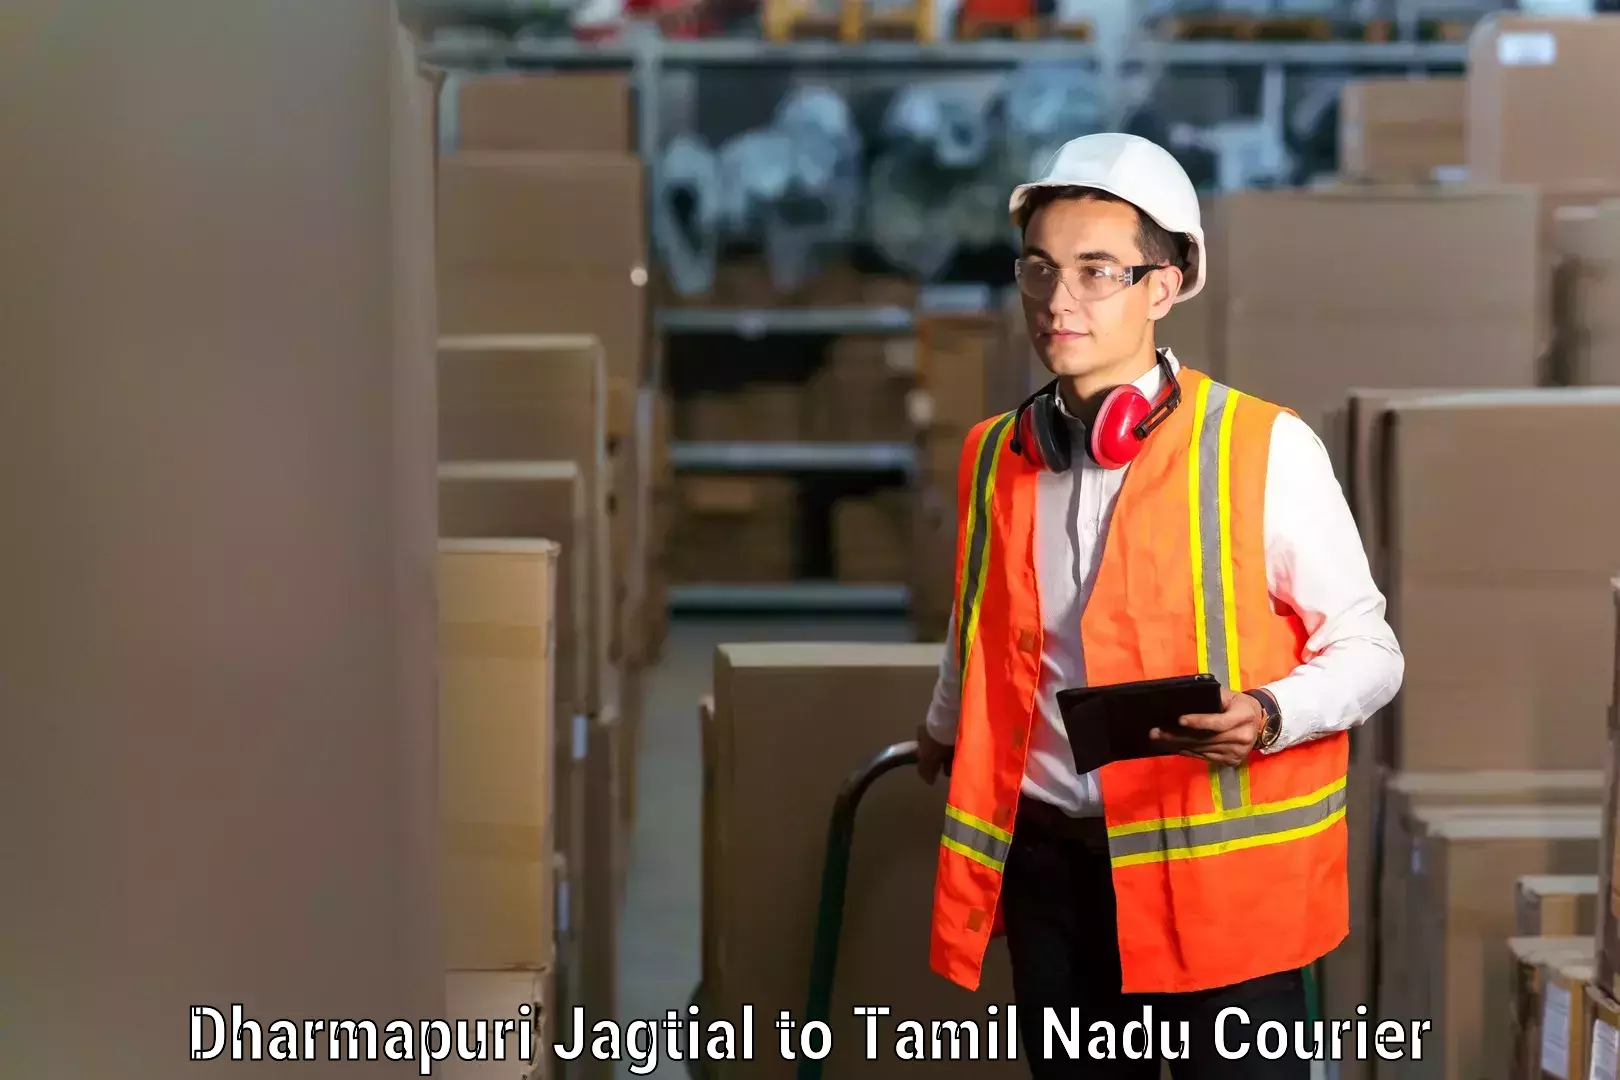 Furniture transport experts Dharmapuri Jagtial to Kangeyam